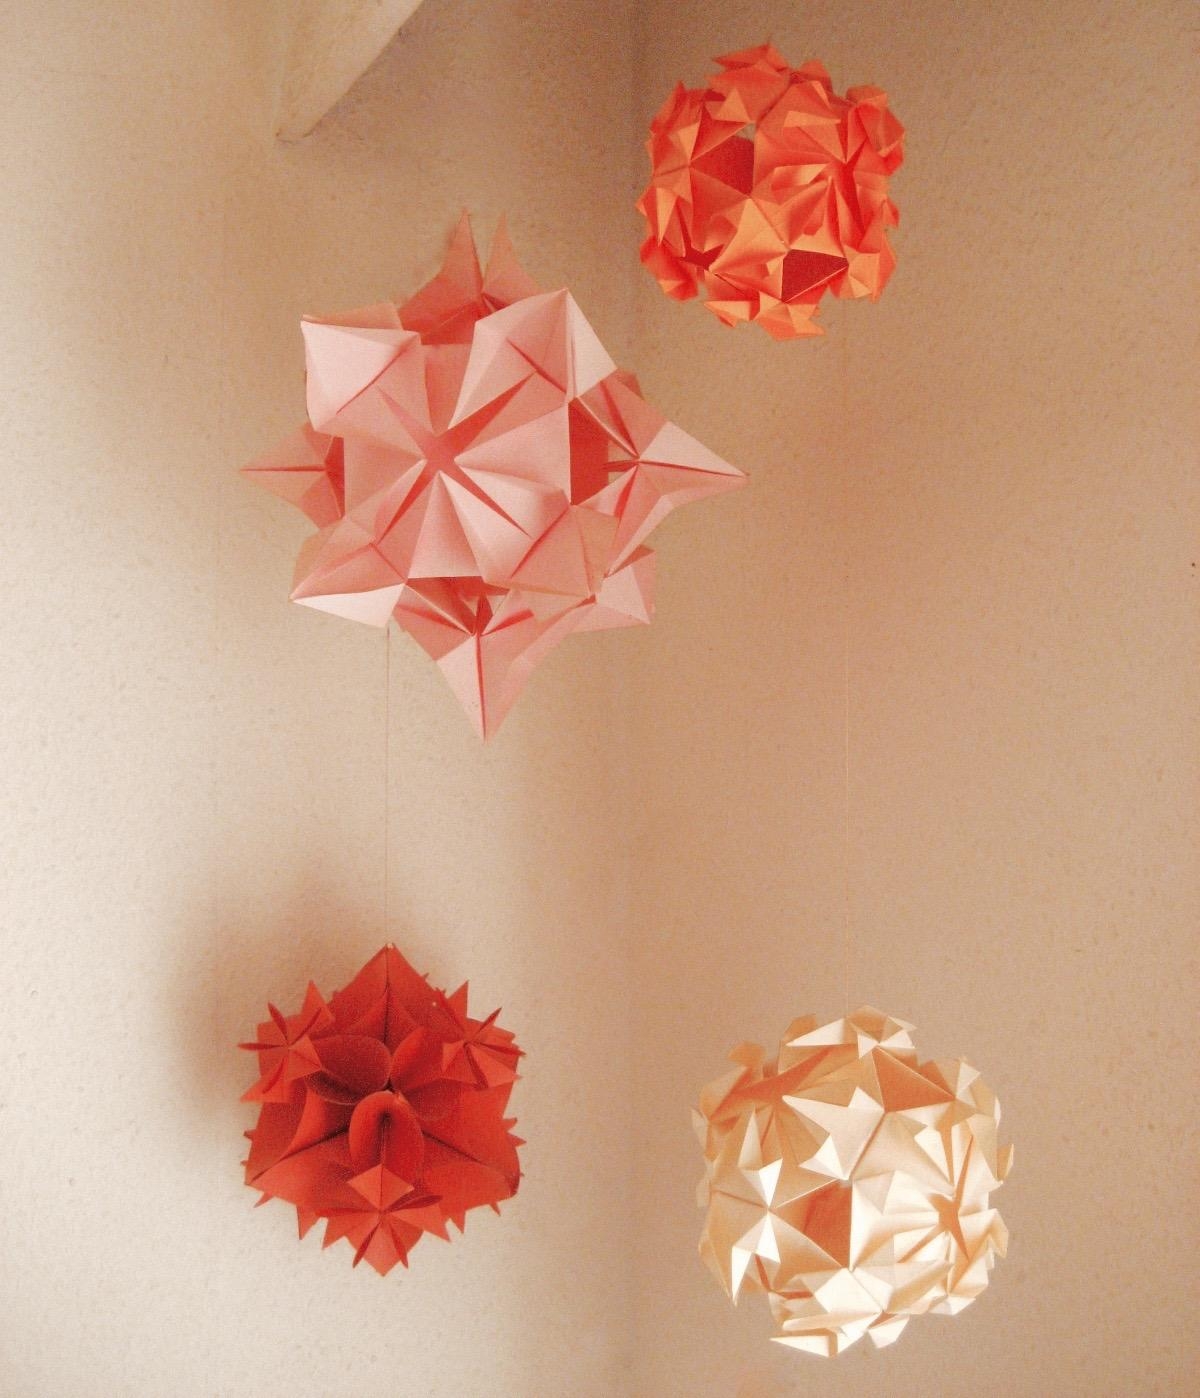 Impressionen aus der Provinz No.02
#origami #kusudama #DIY